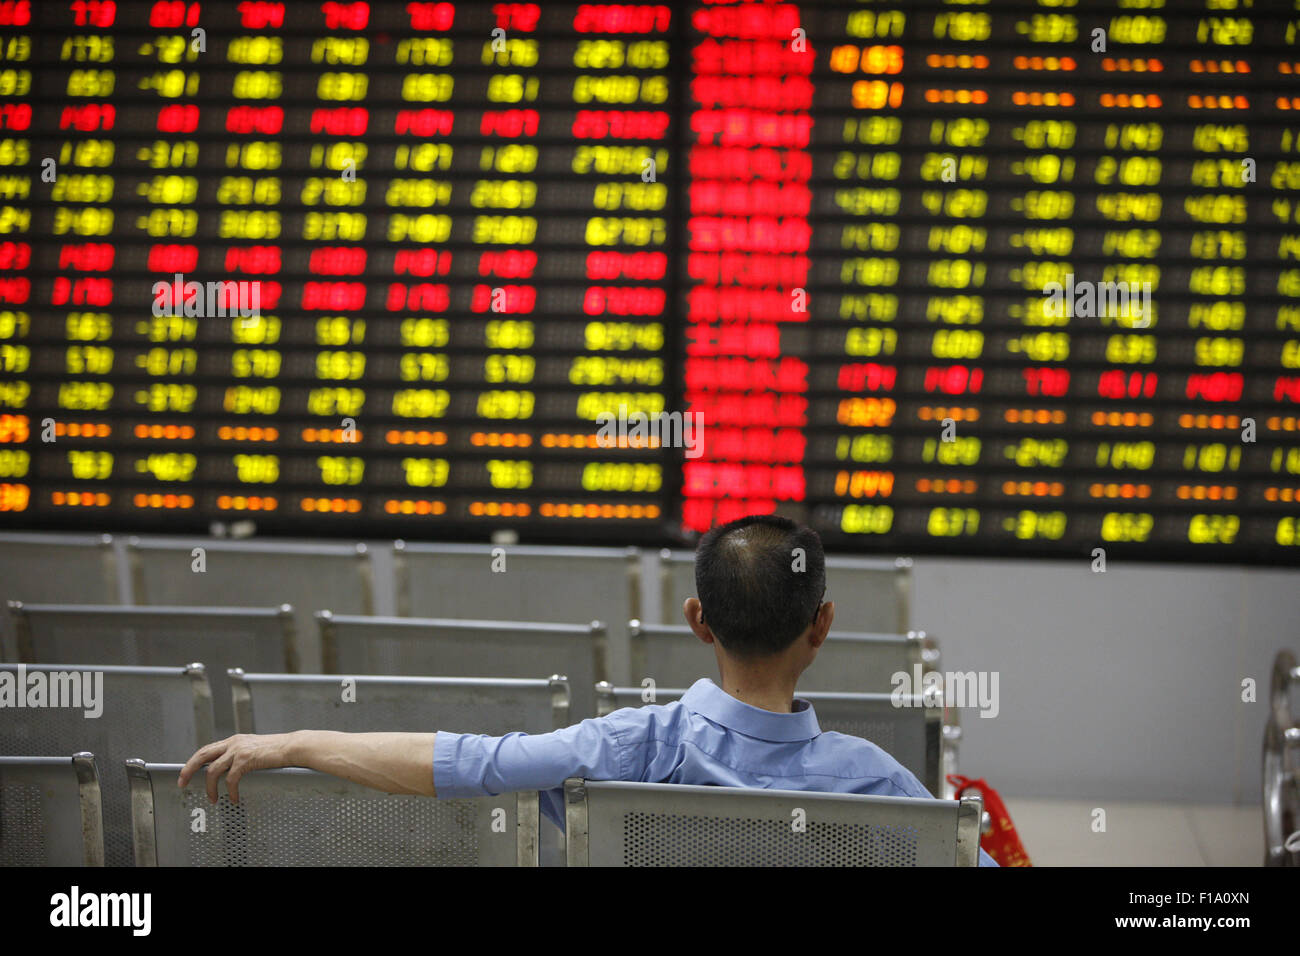 Shanghai, Cina. 31 Agosto, 2015. Un investitore orologi eclettica monitor presso una borsa in Huaibei, provincia di Anhui in Cina il 31 agosto 2015.Il Shanghai Composite Index è sceso 0,8 percento a 3,205.99 presso il vicino, girando una perdita di quanto 3.8 percento. Il blue-chip CSI300 index .CSI300 è riuscito ad artigliare torna in territorio positivo in commercio in ritardo, finendo 0,7 percento a punti 3,366.54. Entrambi gli indici sparso intorno al 12 per cento per il mese, la loro terza diminuzione mensile e hanno perso quasi il 40 per cento del loro valore a partire dalla metà di giugno. Credito: CPRESS FOTO LIMITATA/Alamy Live News Foto Stock